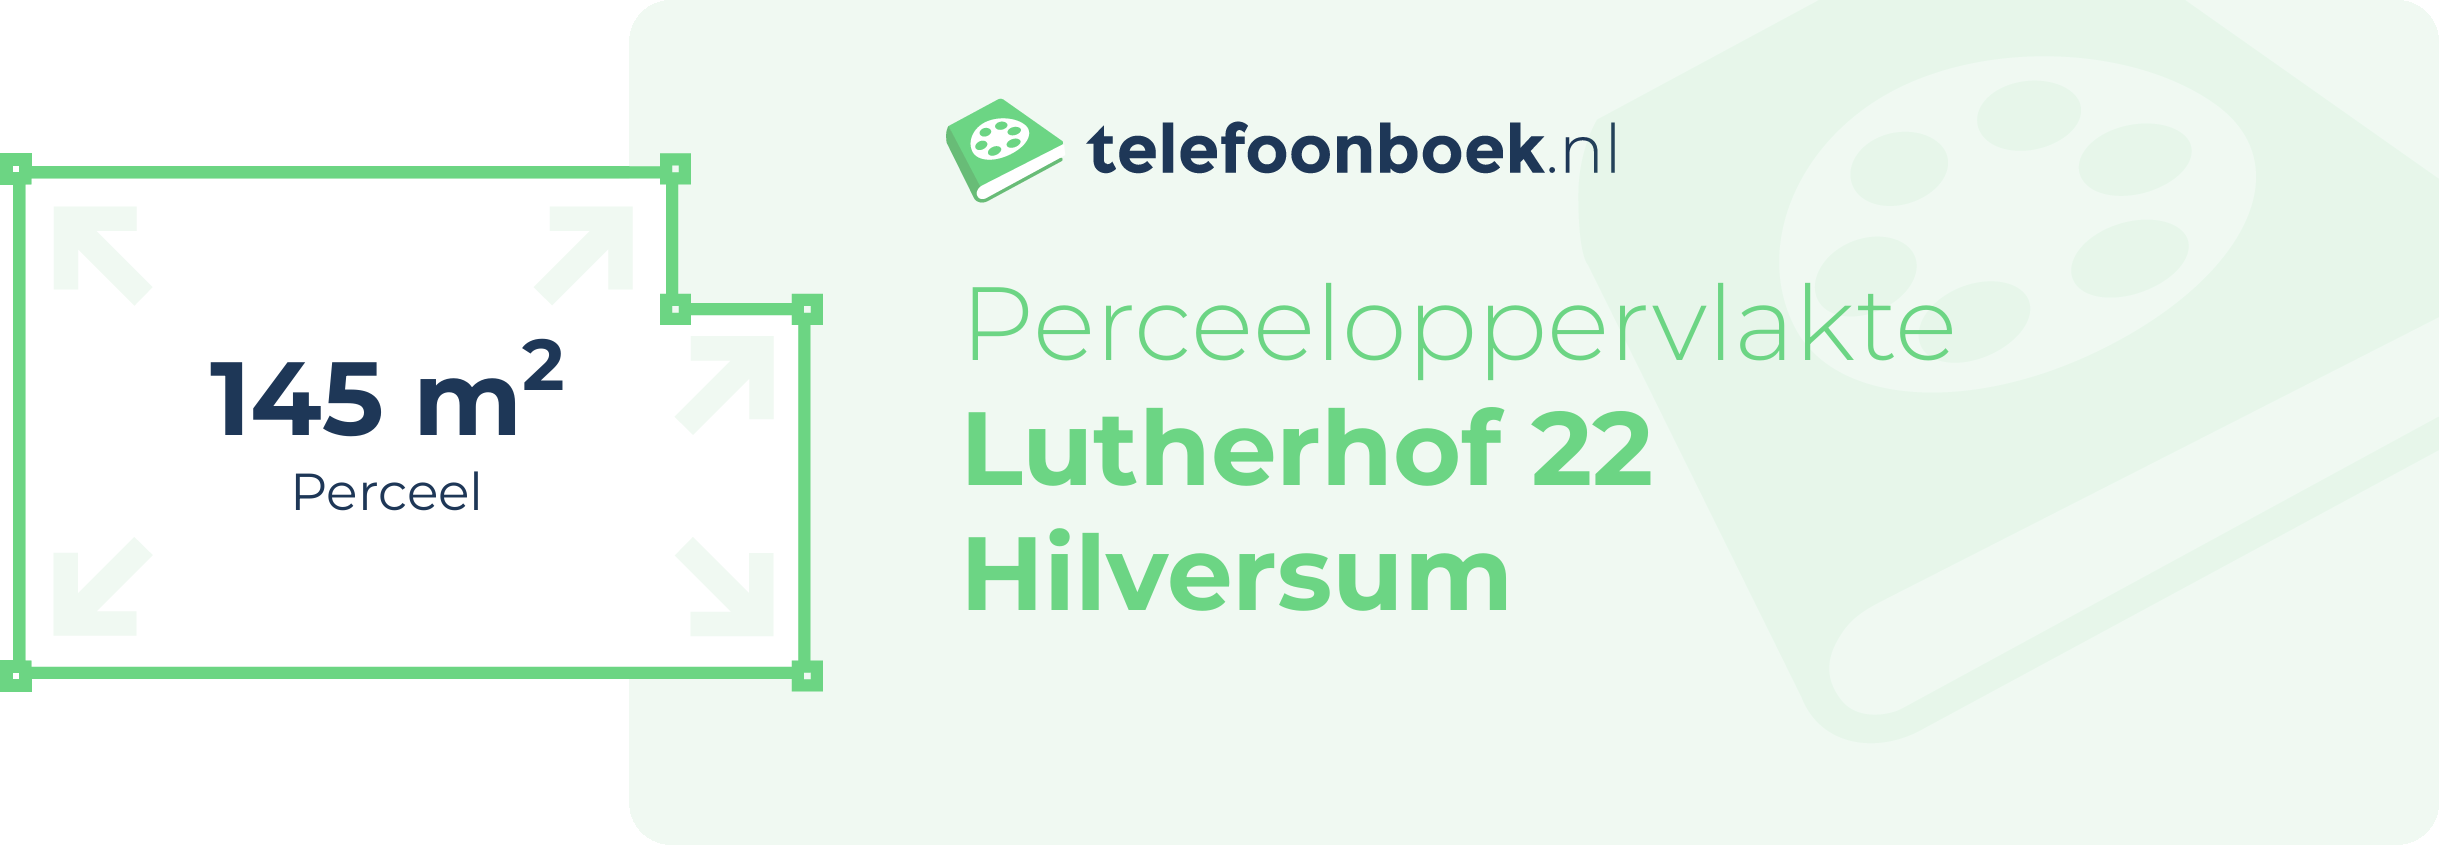 Perceeloppervlakte Lutherhof 22 Hilversum